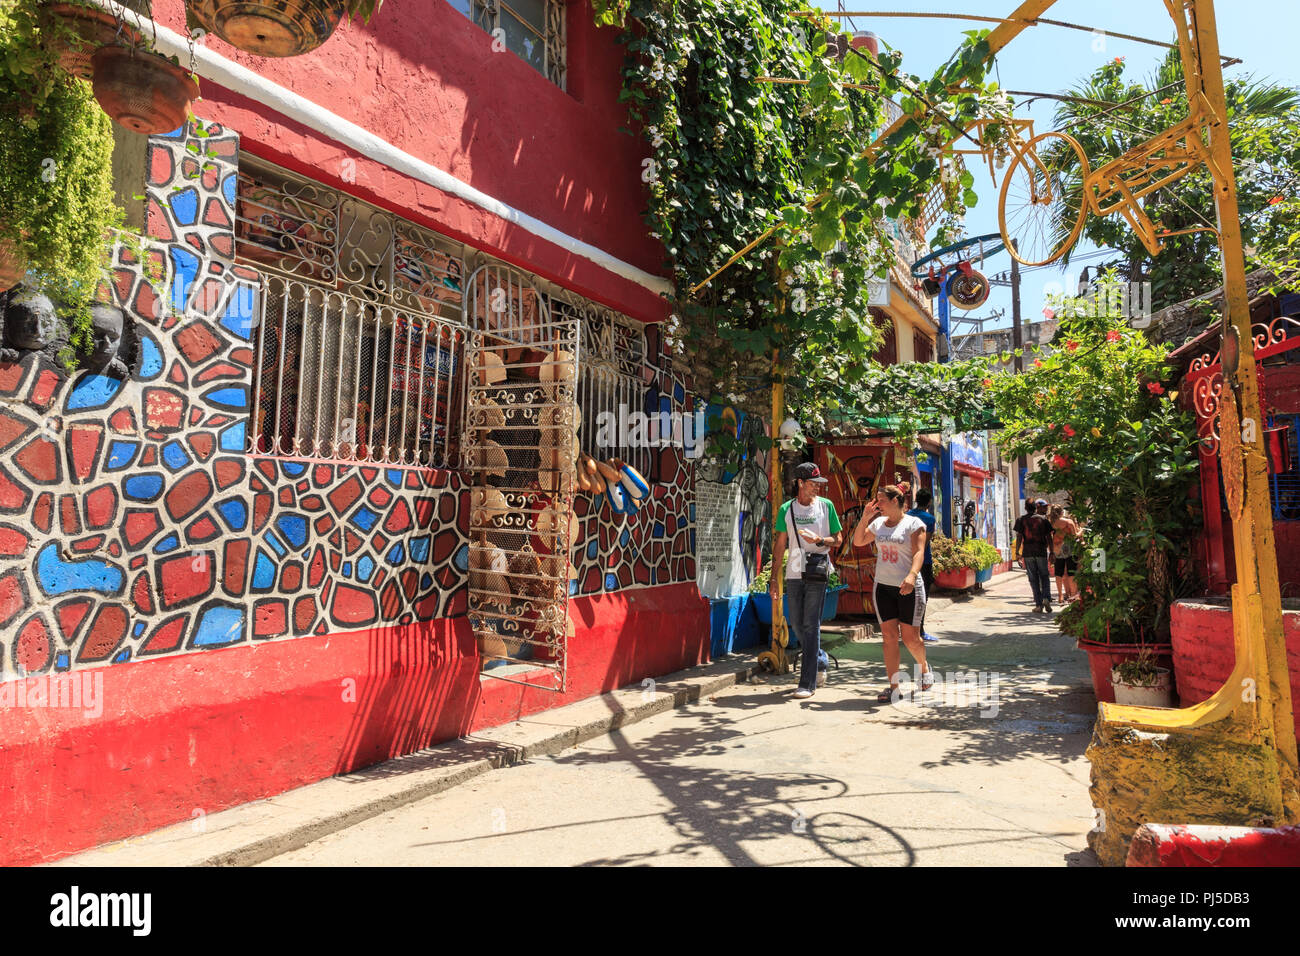 Callejon de Hamel quartier des artistes, galeries, projets créatifs et scène d'art destination touristique, Centro, la Havane, Cuba Banque D'Images